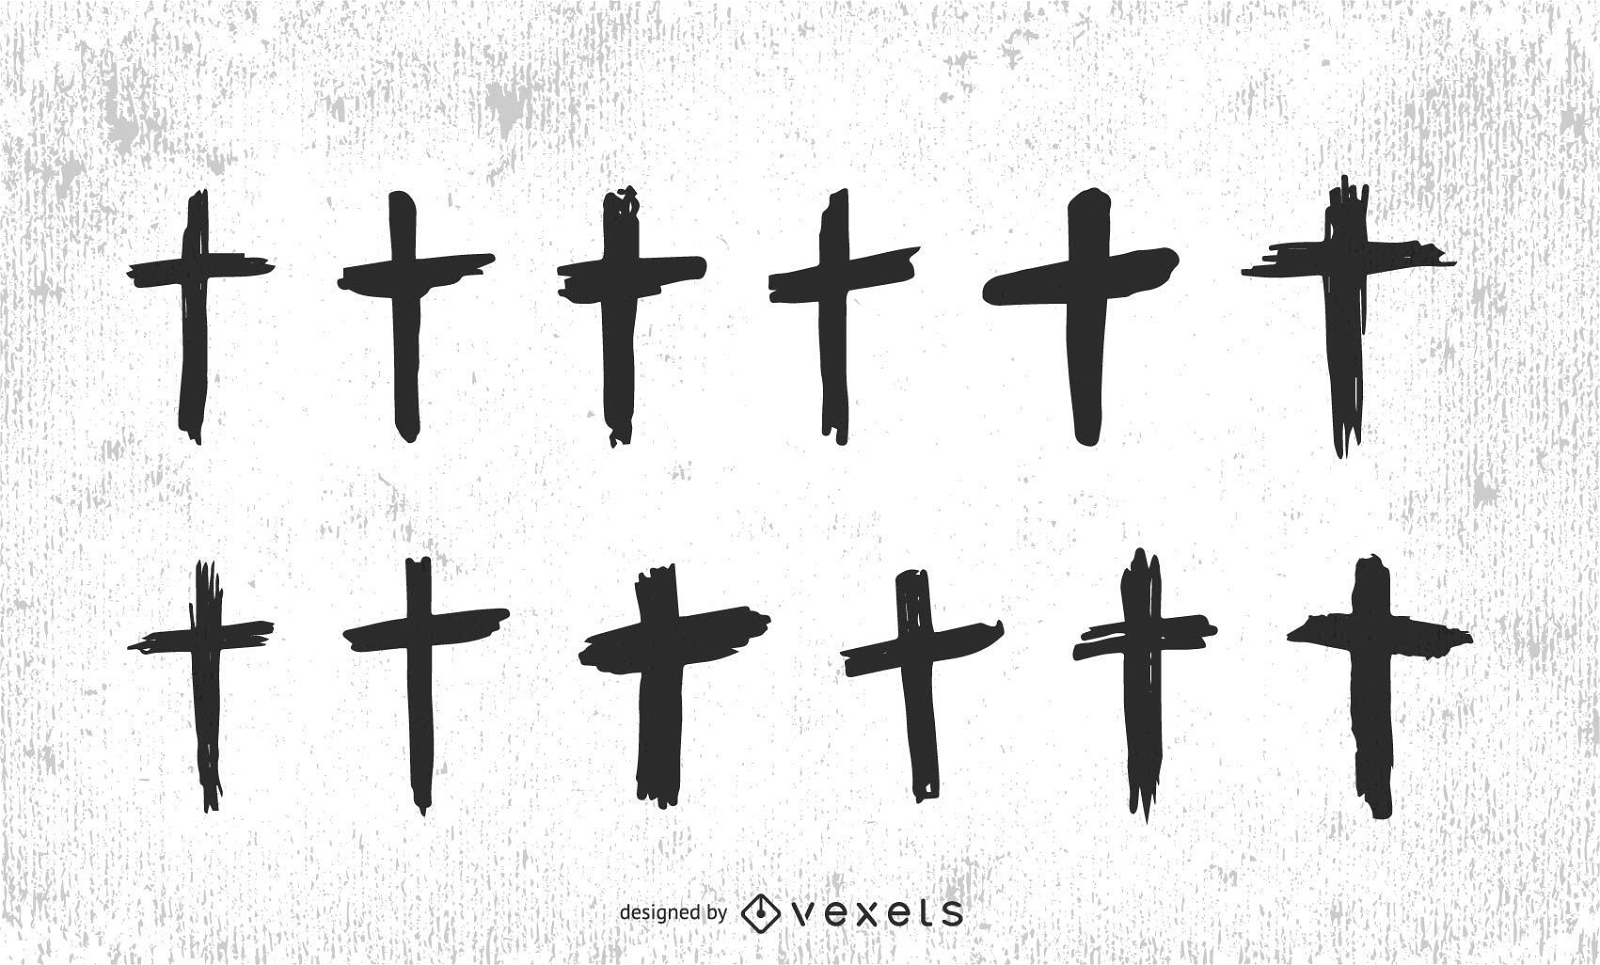 Conjunto de cruzes crist?s desenhadas ? m?o